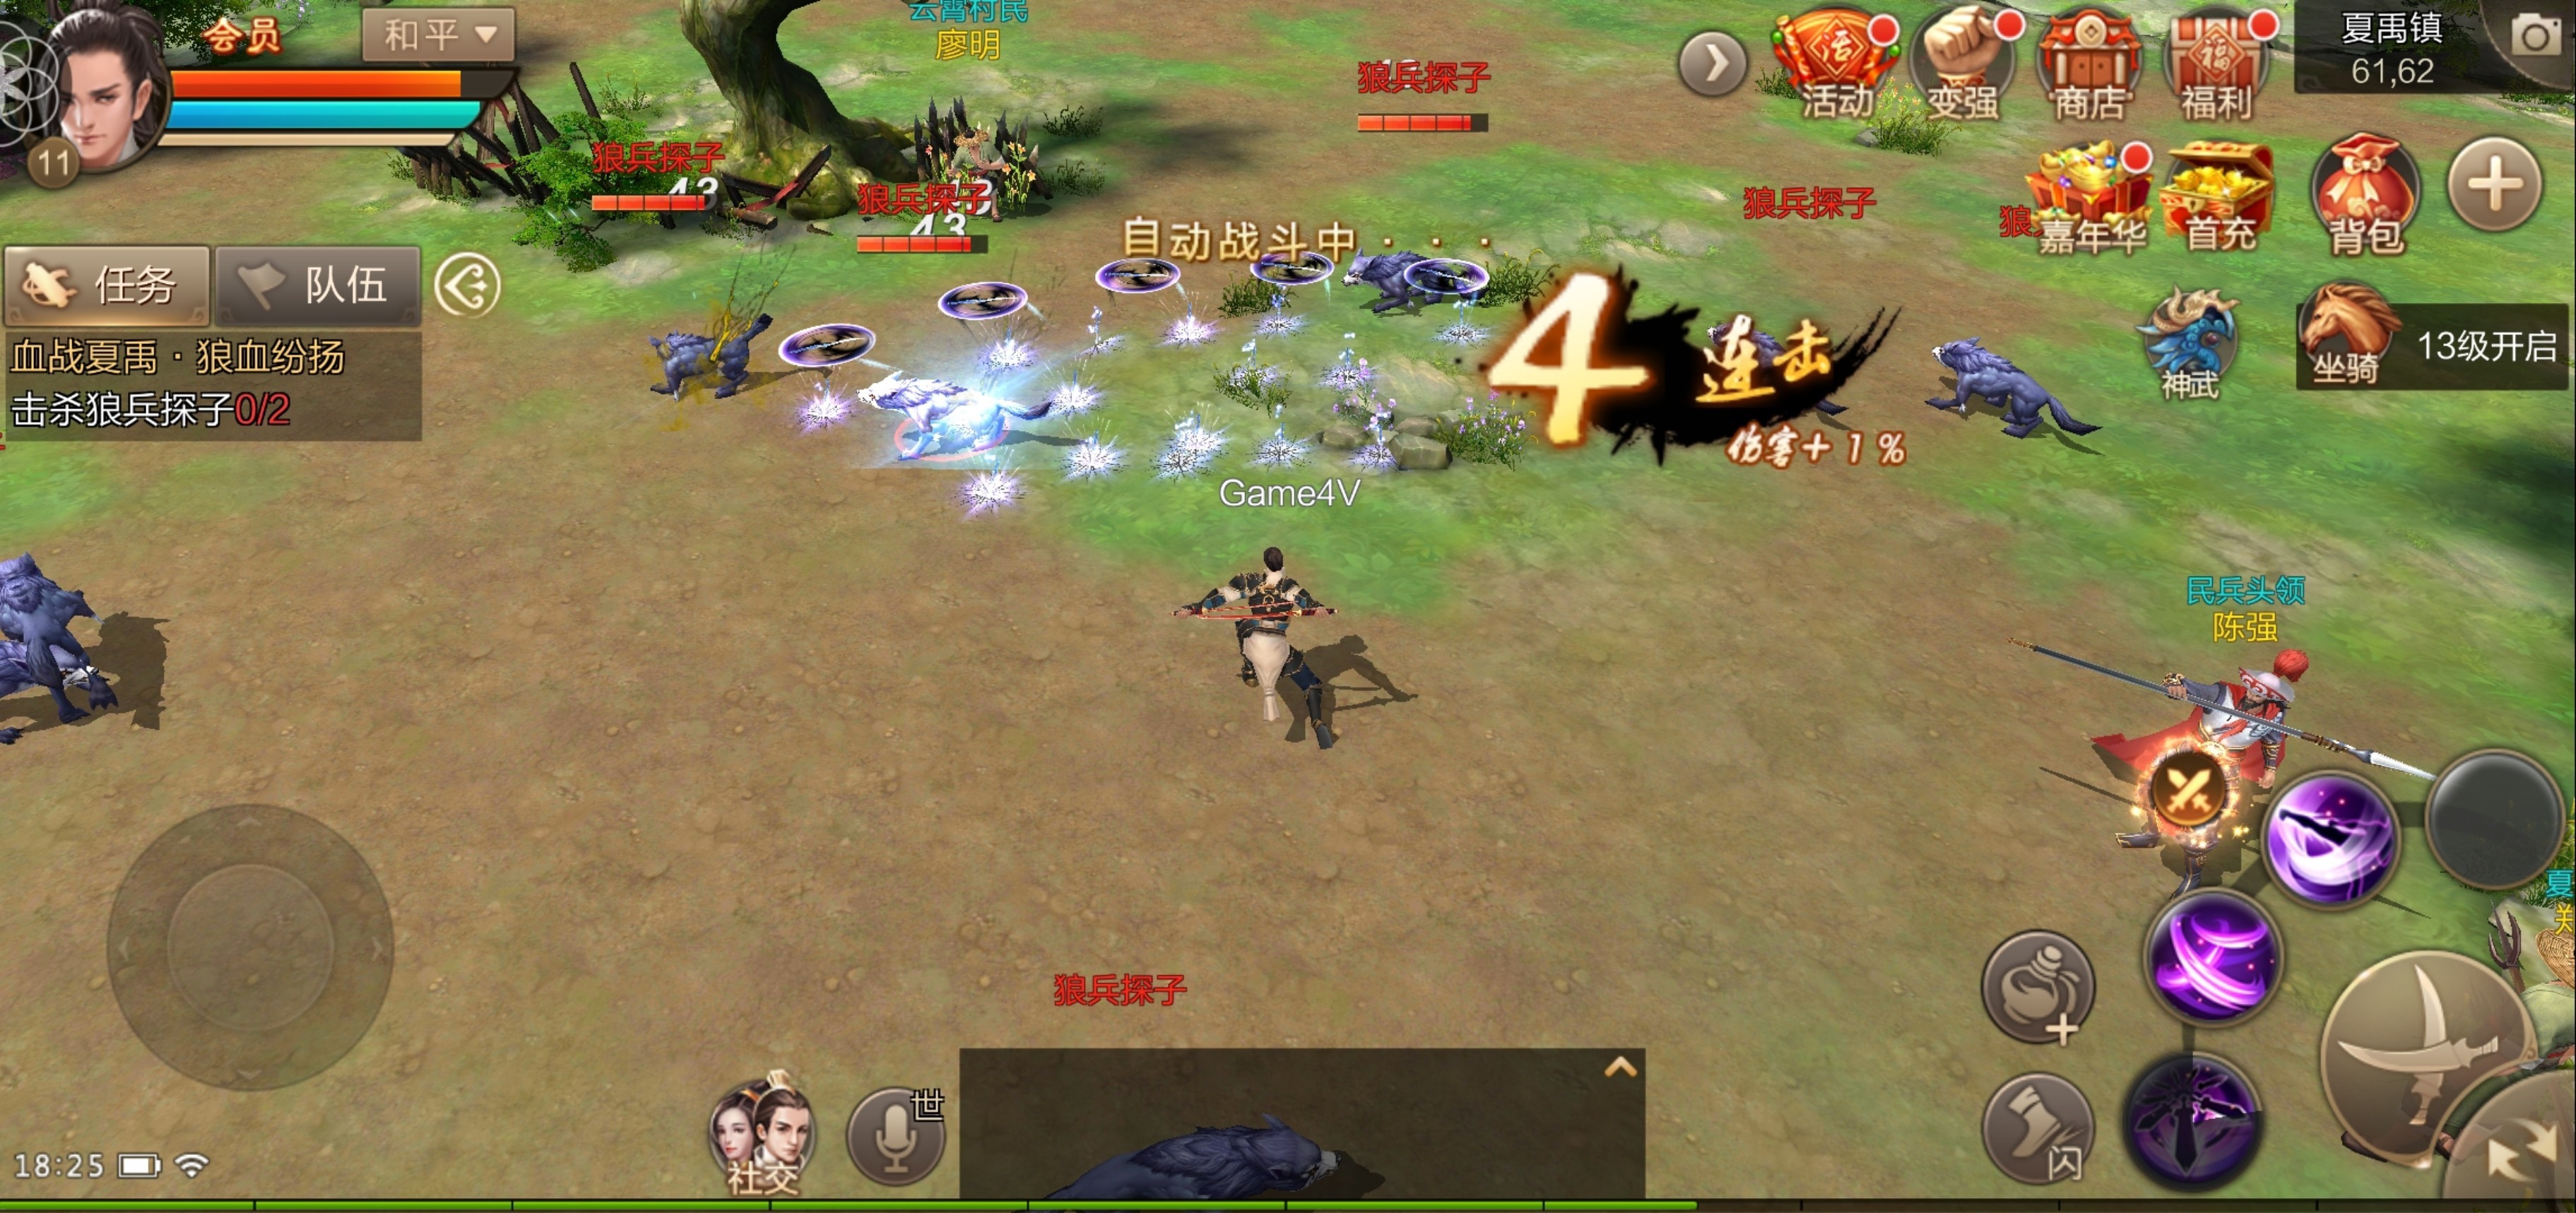 Trải nghiệm trước Tuyệt Thế Vô Song Mobile bản Trung Quốc - Game MMO của Changyou được SohaGame phát hành tại VN